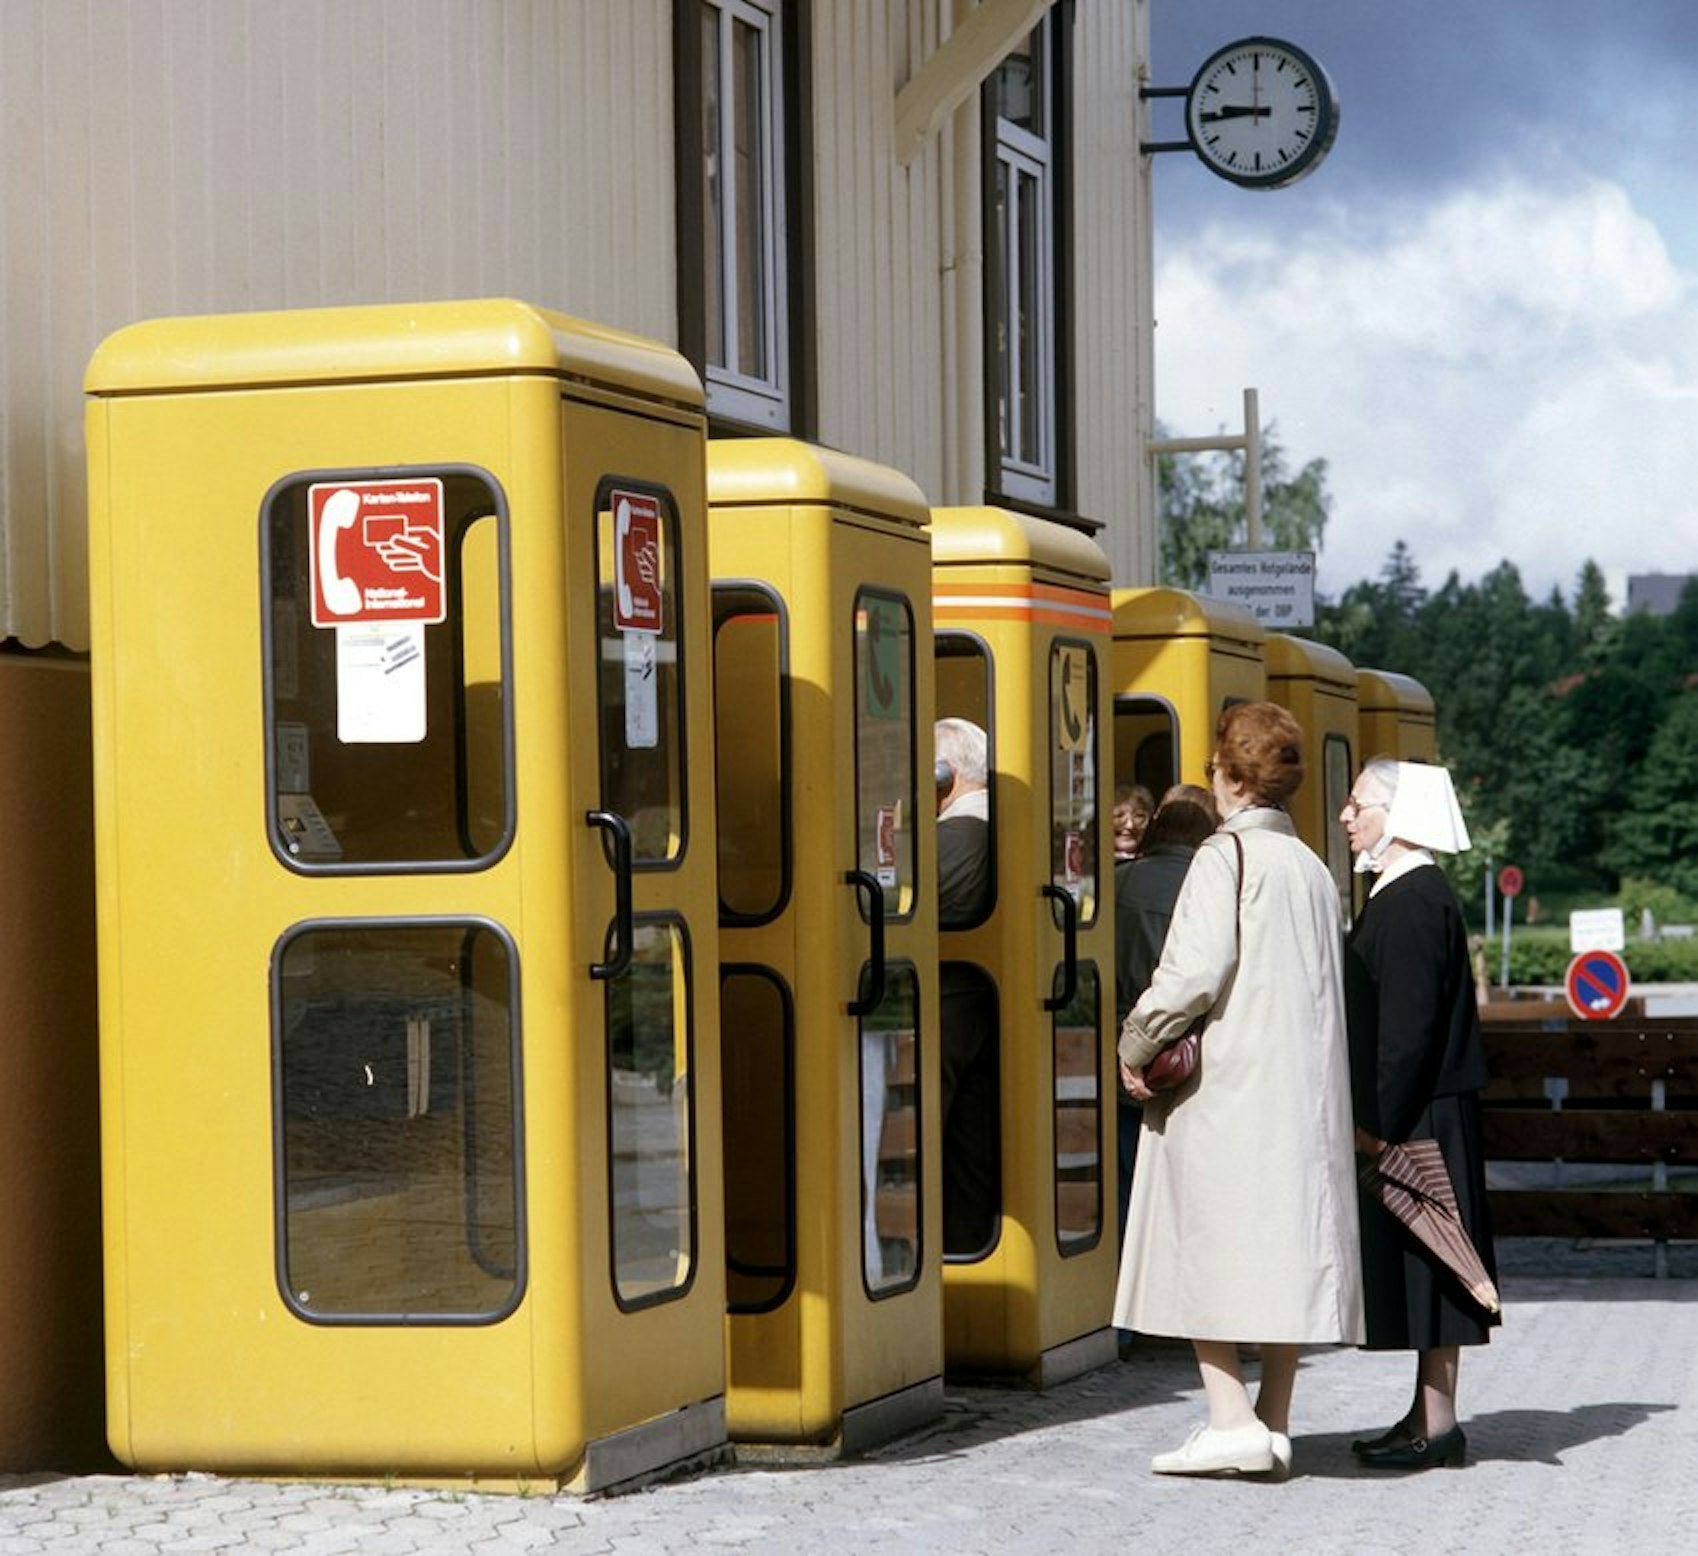 Die gelben Telefonzellen prägten früher das Bild jeder westdeutschen Stadt.